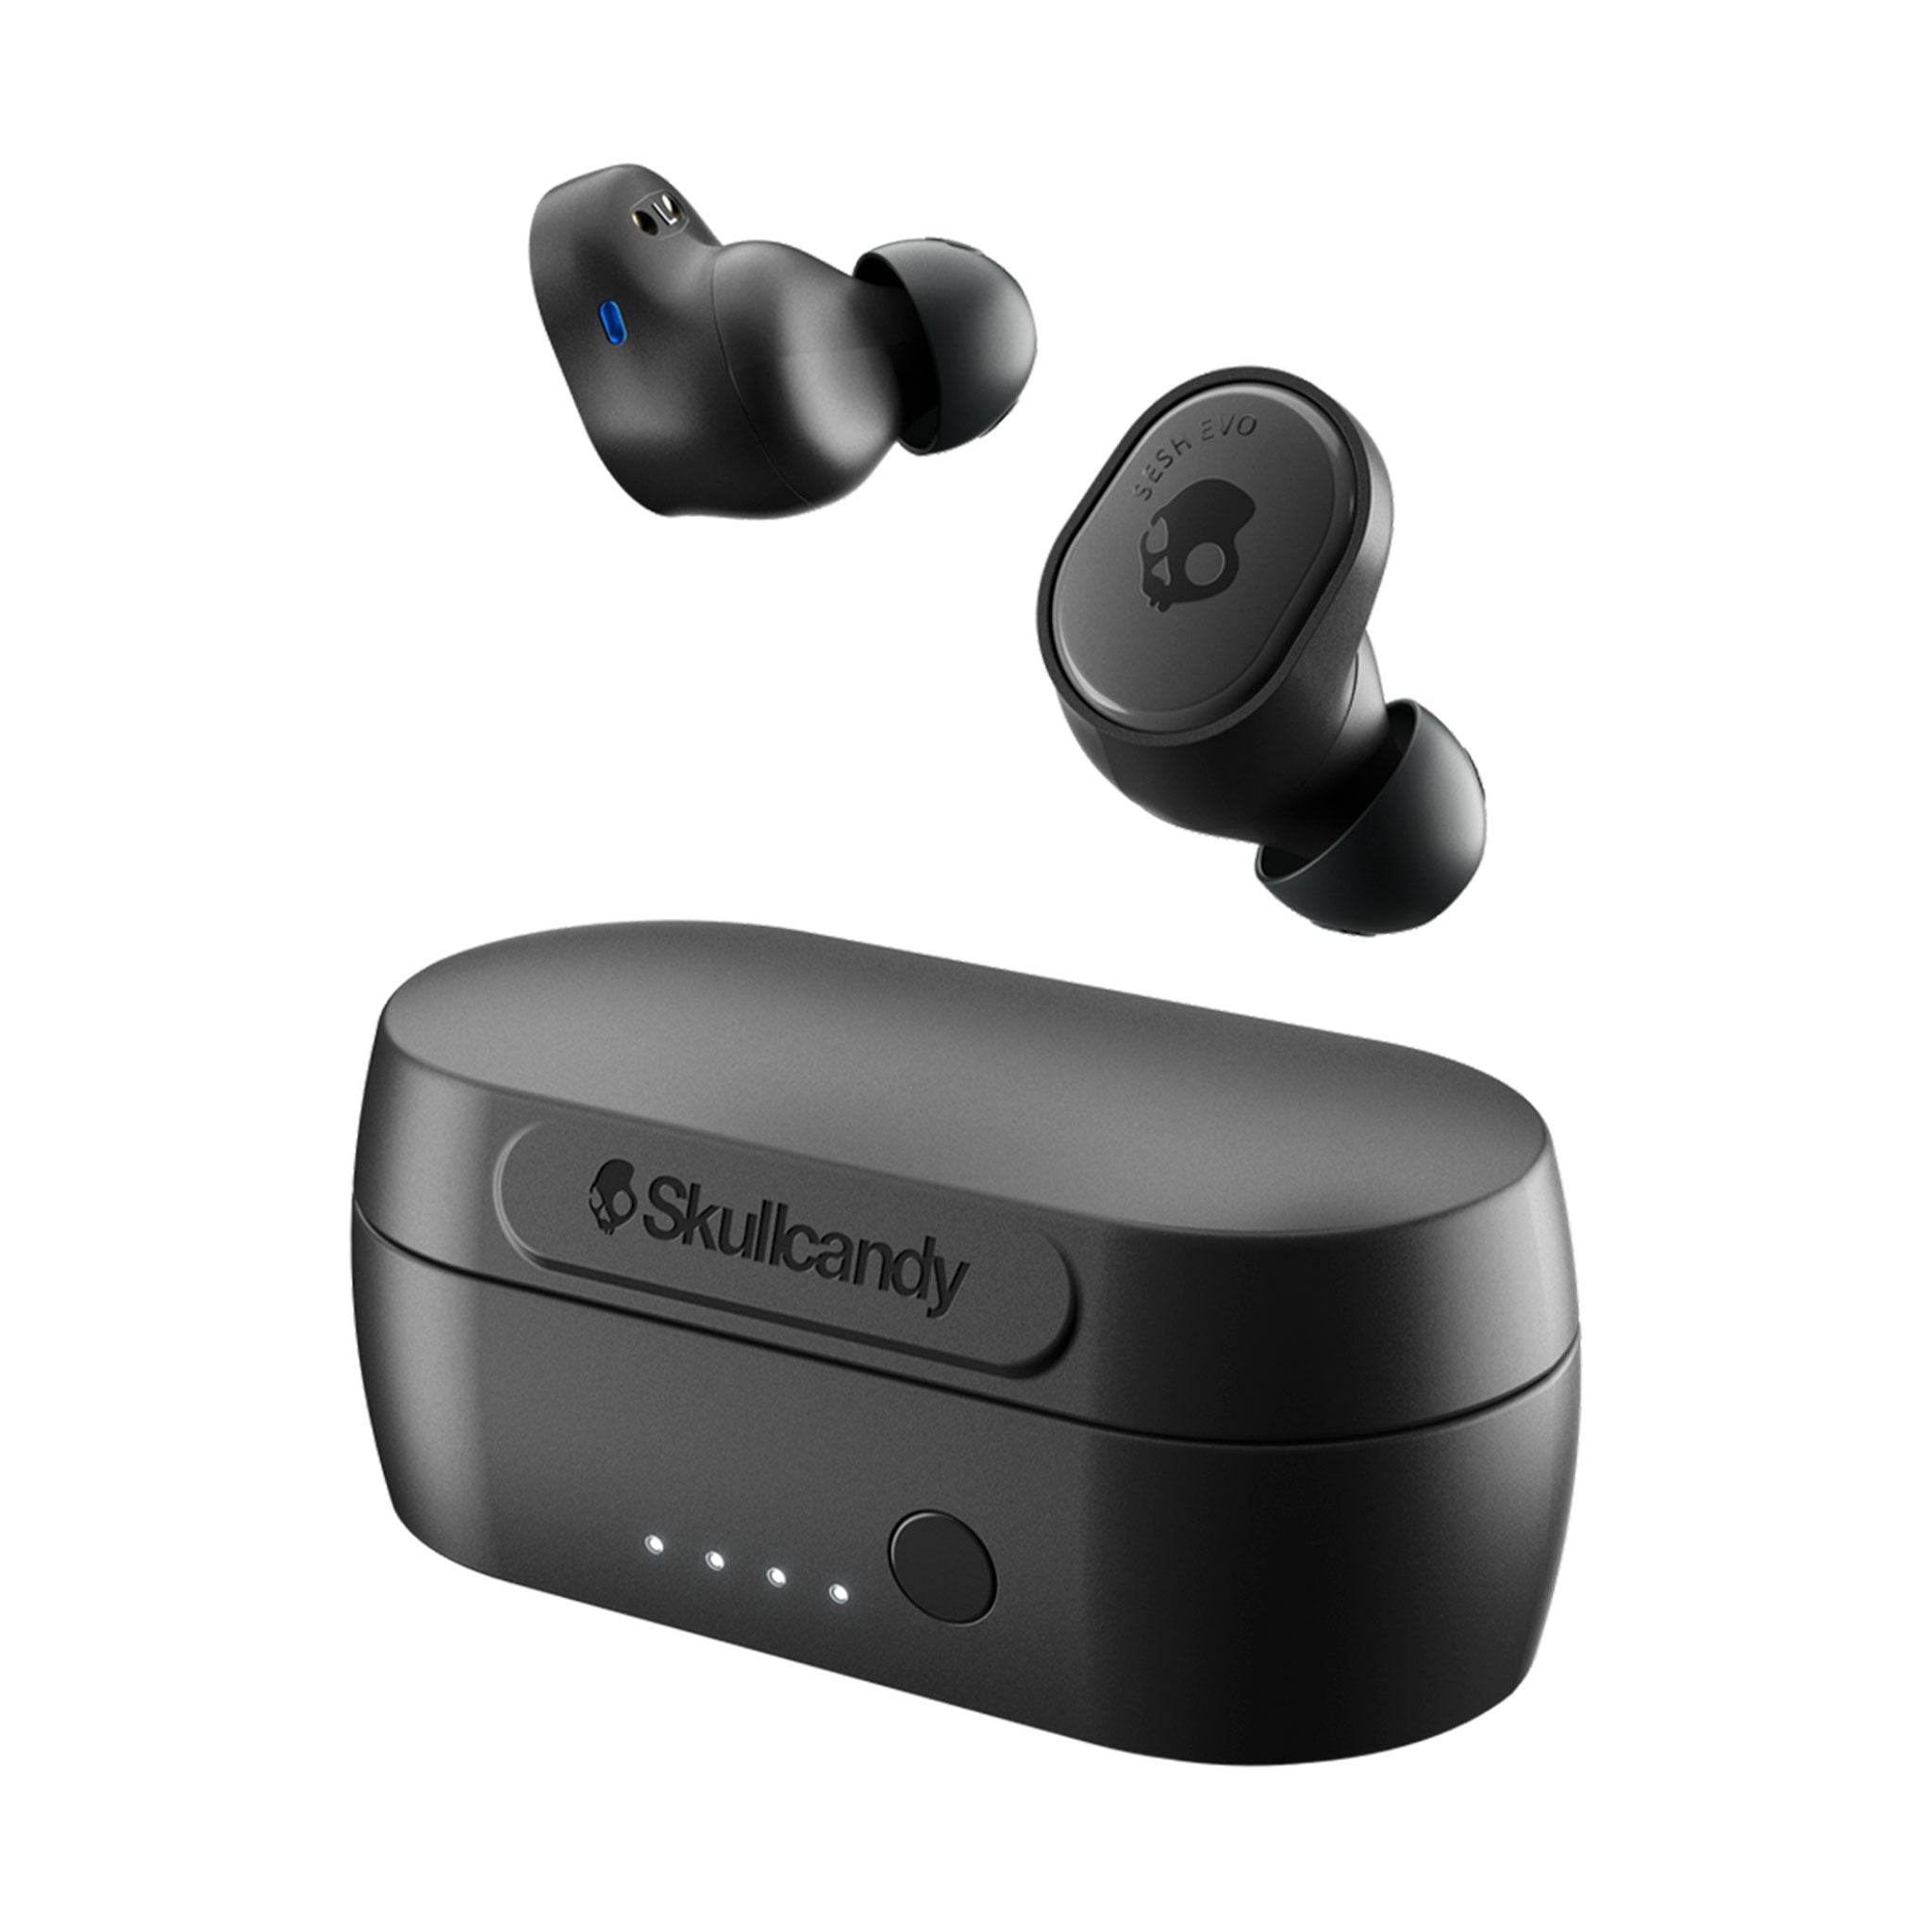 Skullcandy - Sesh Evo True Wireless In Ear Headphones - True Black